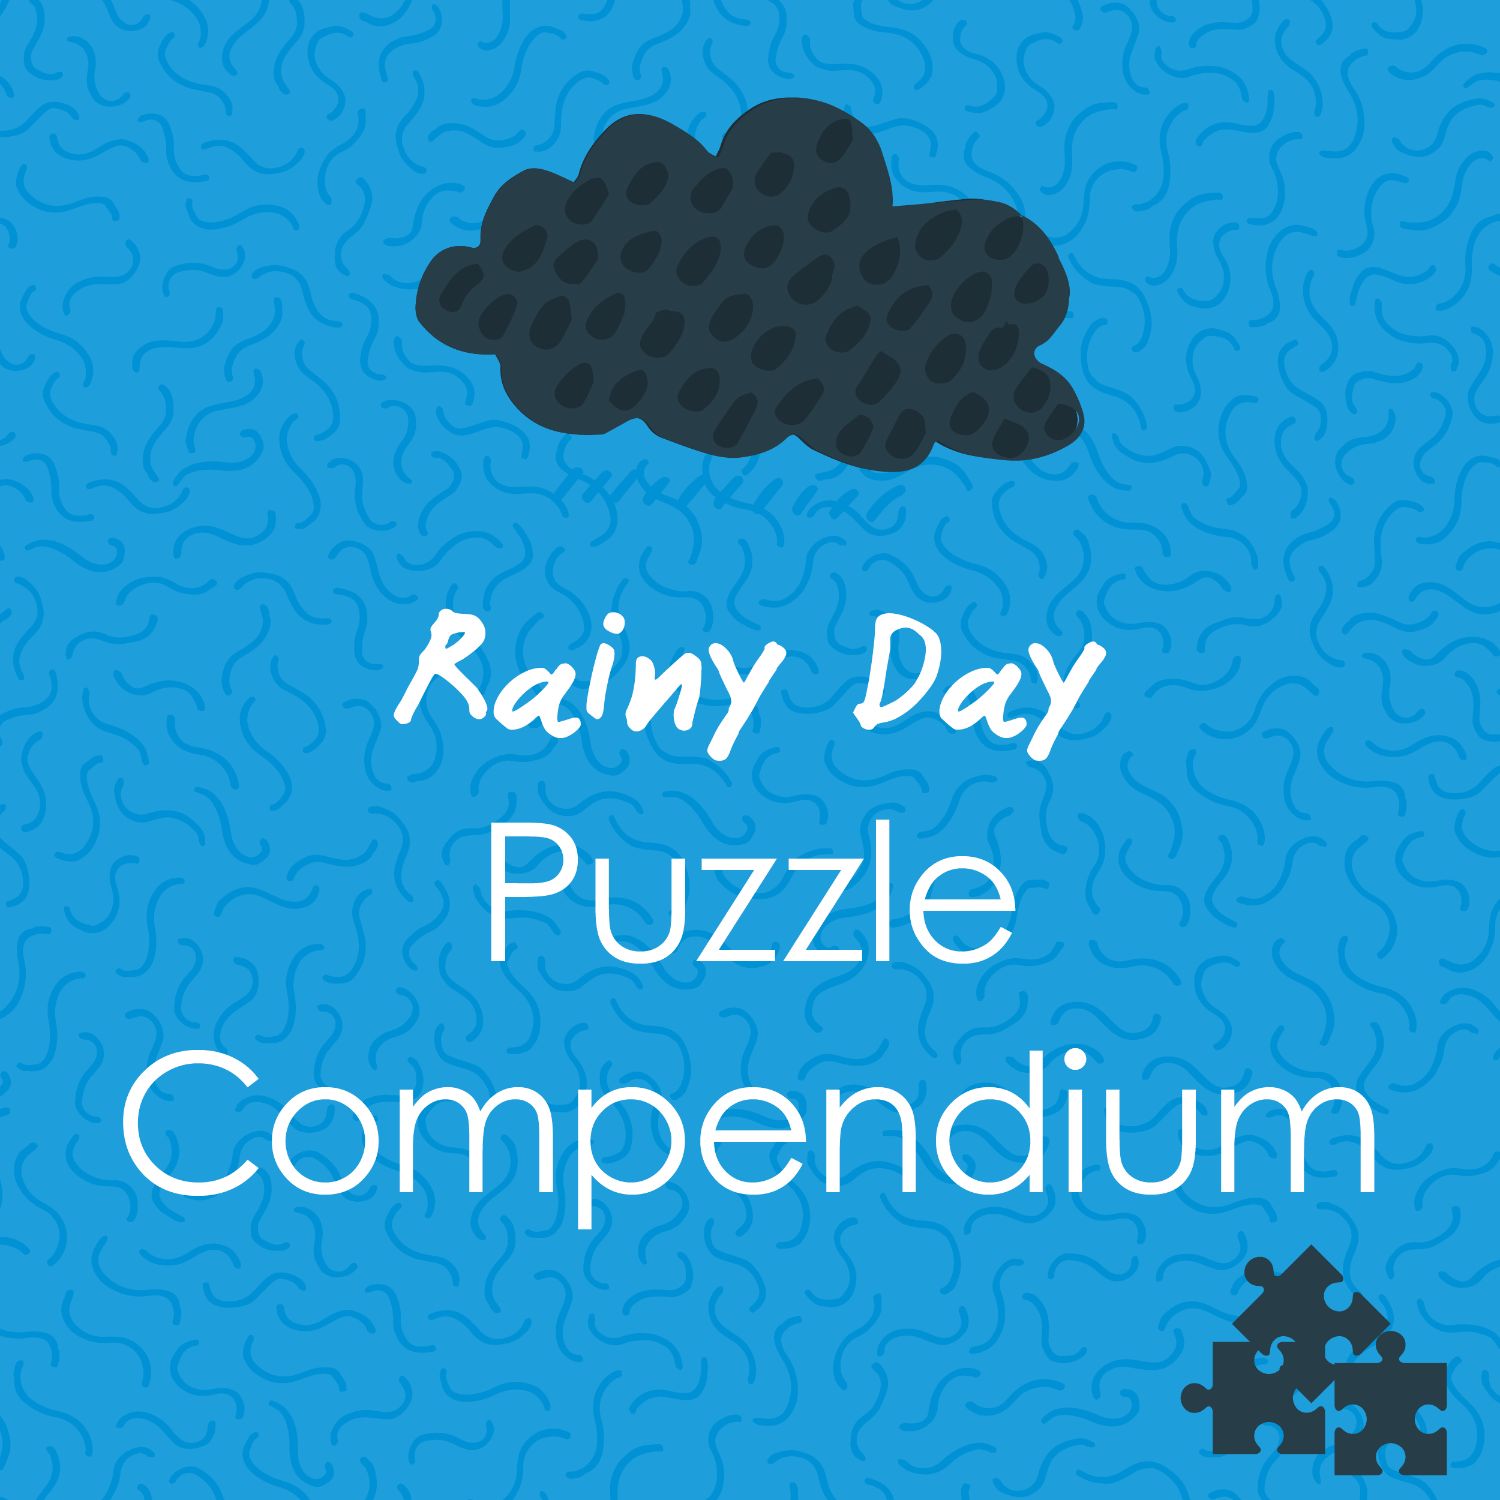 Treasure Trails' rainy day puzzle compendium